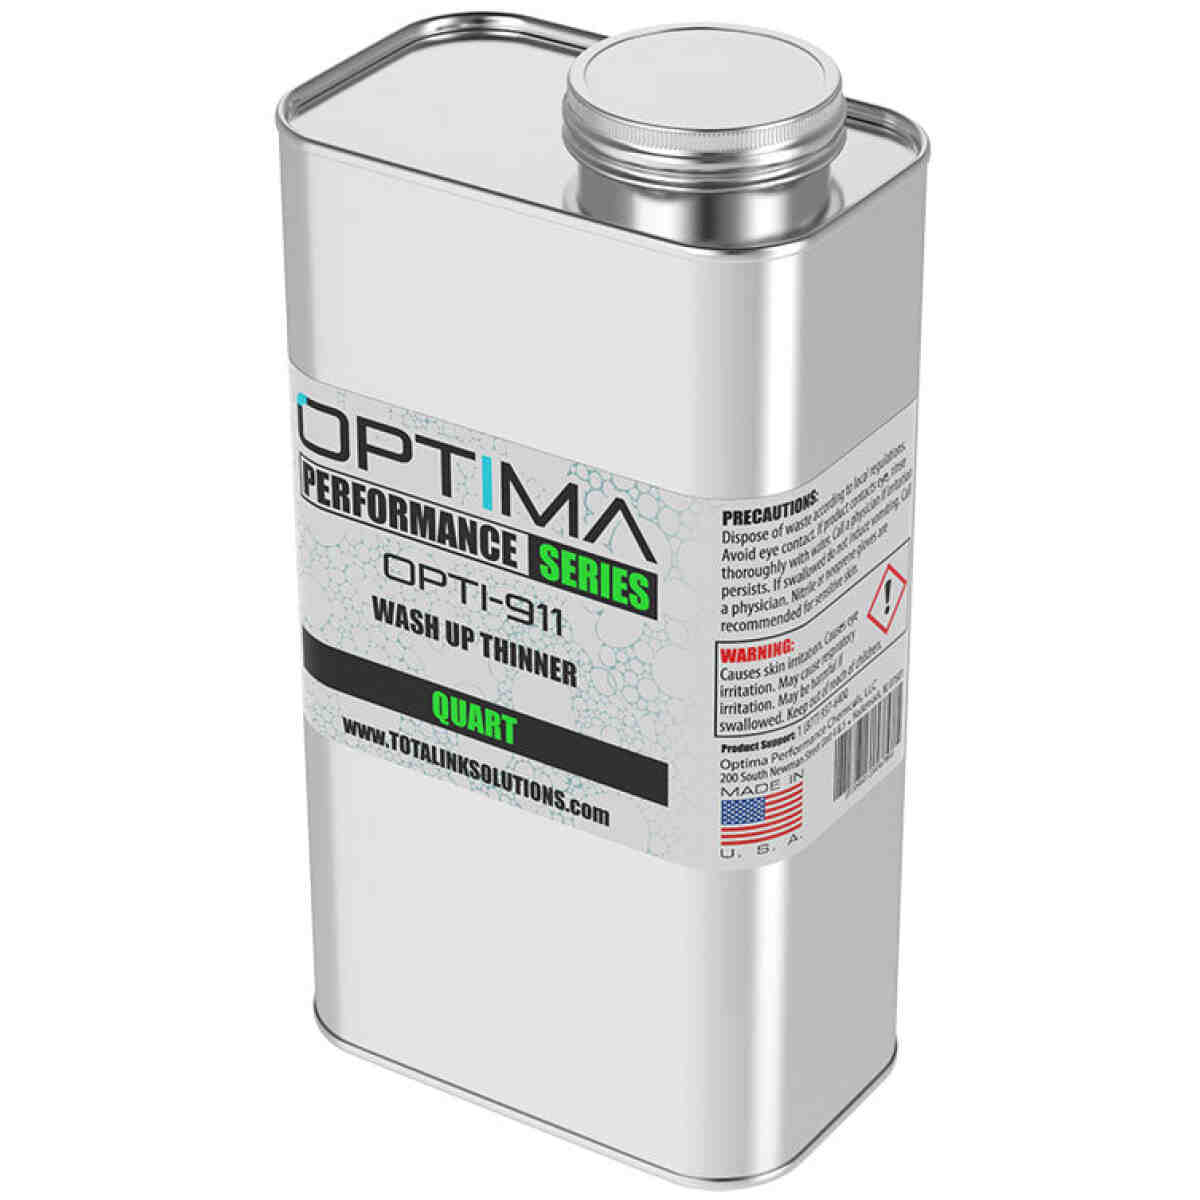 Opti-911 Wash Up Thinner OPTIMA PERFORMANCE SERIES®